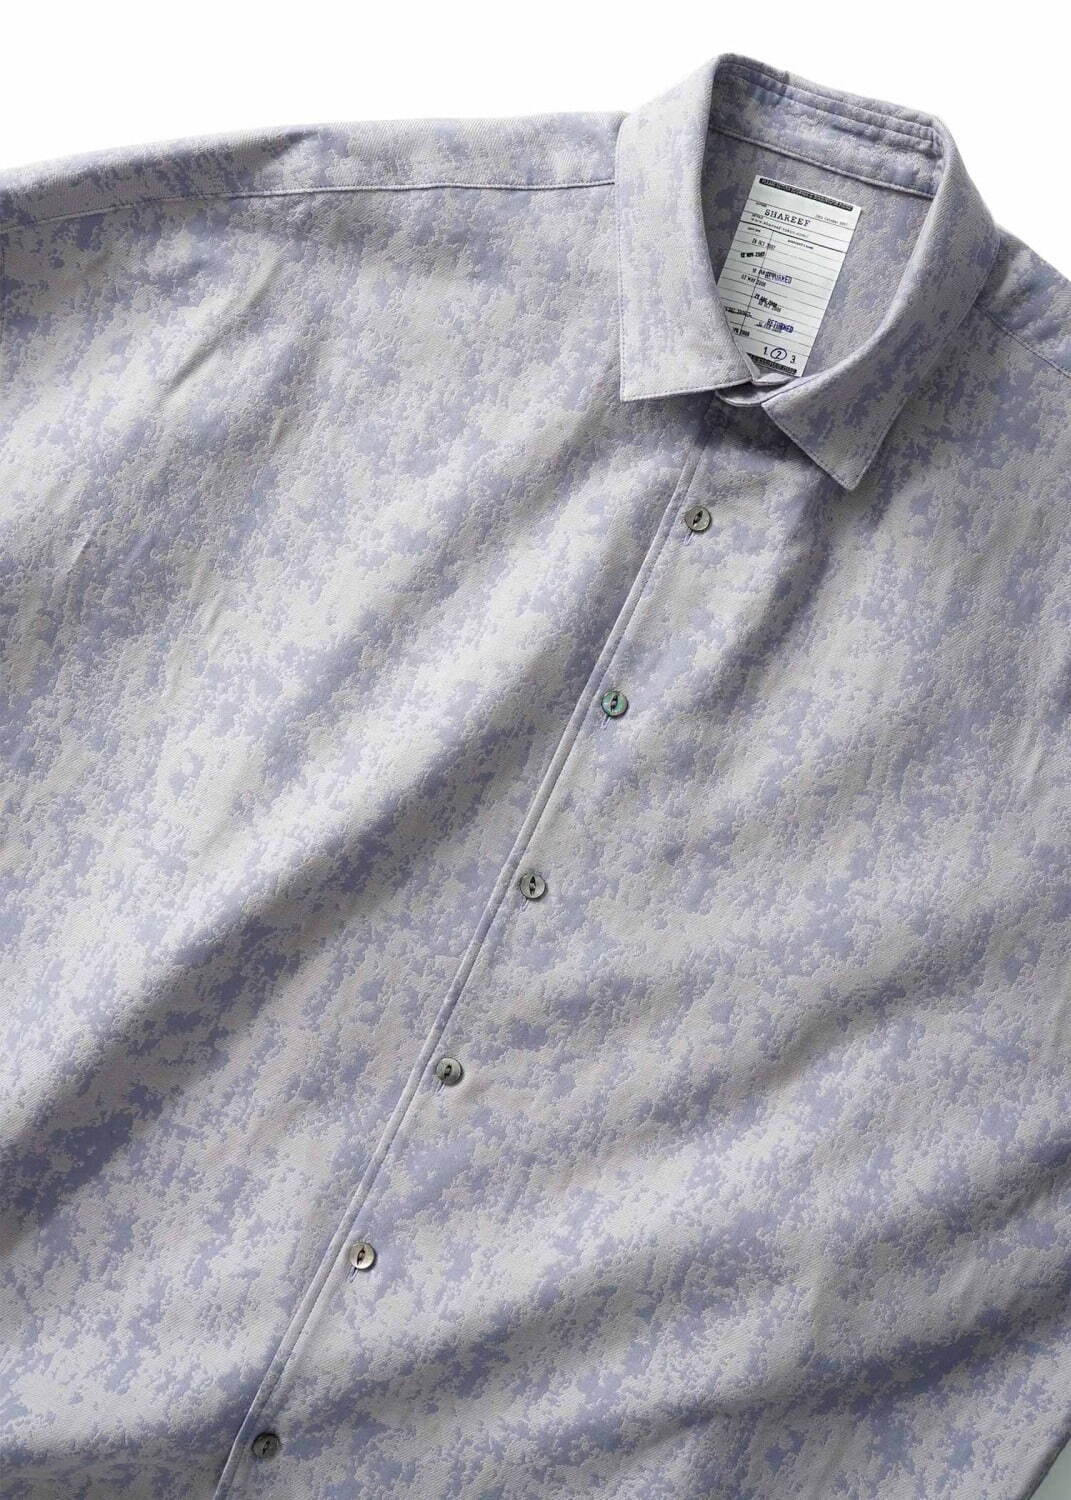 シャリーフ 2021秋のおすすめ新作メンズシャツ、抽象柄ジャカードや“光